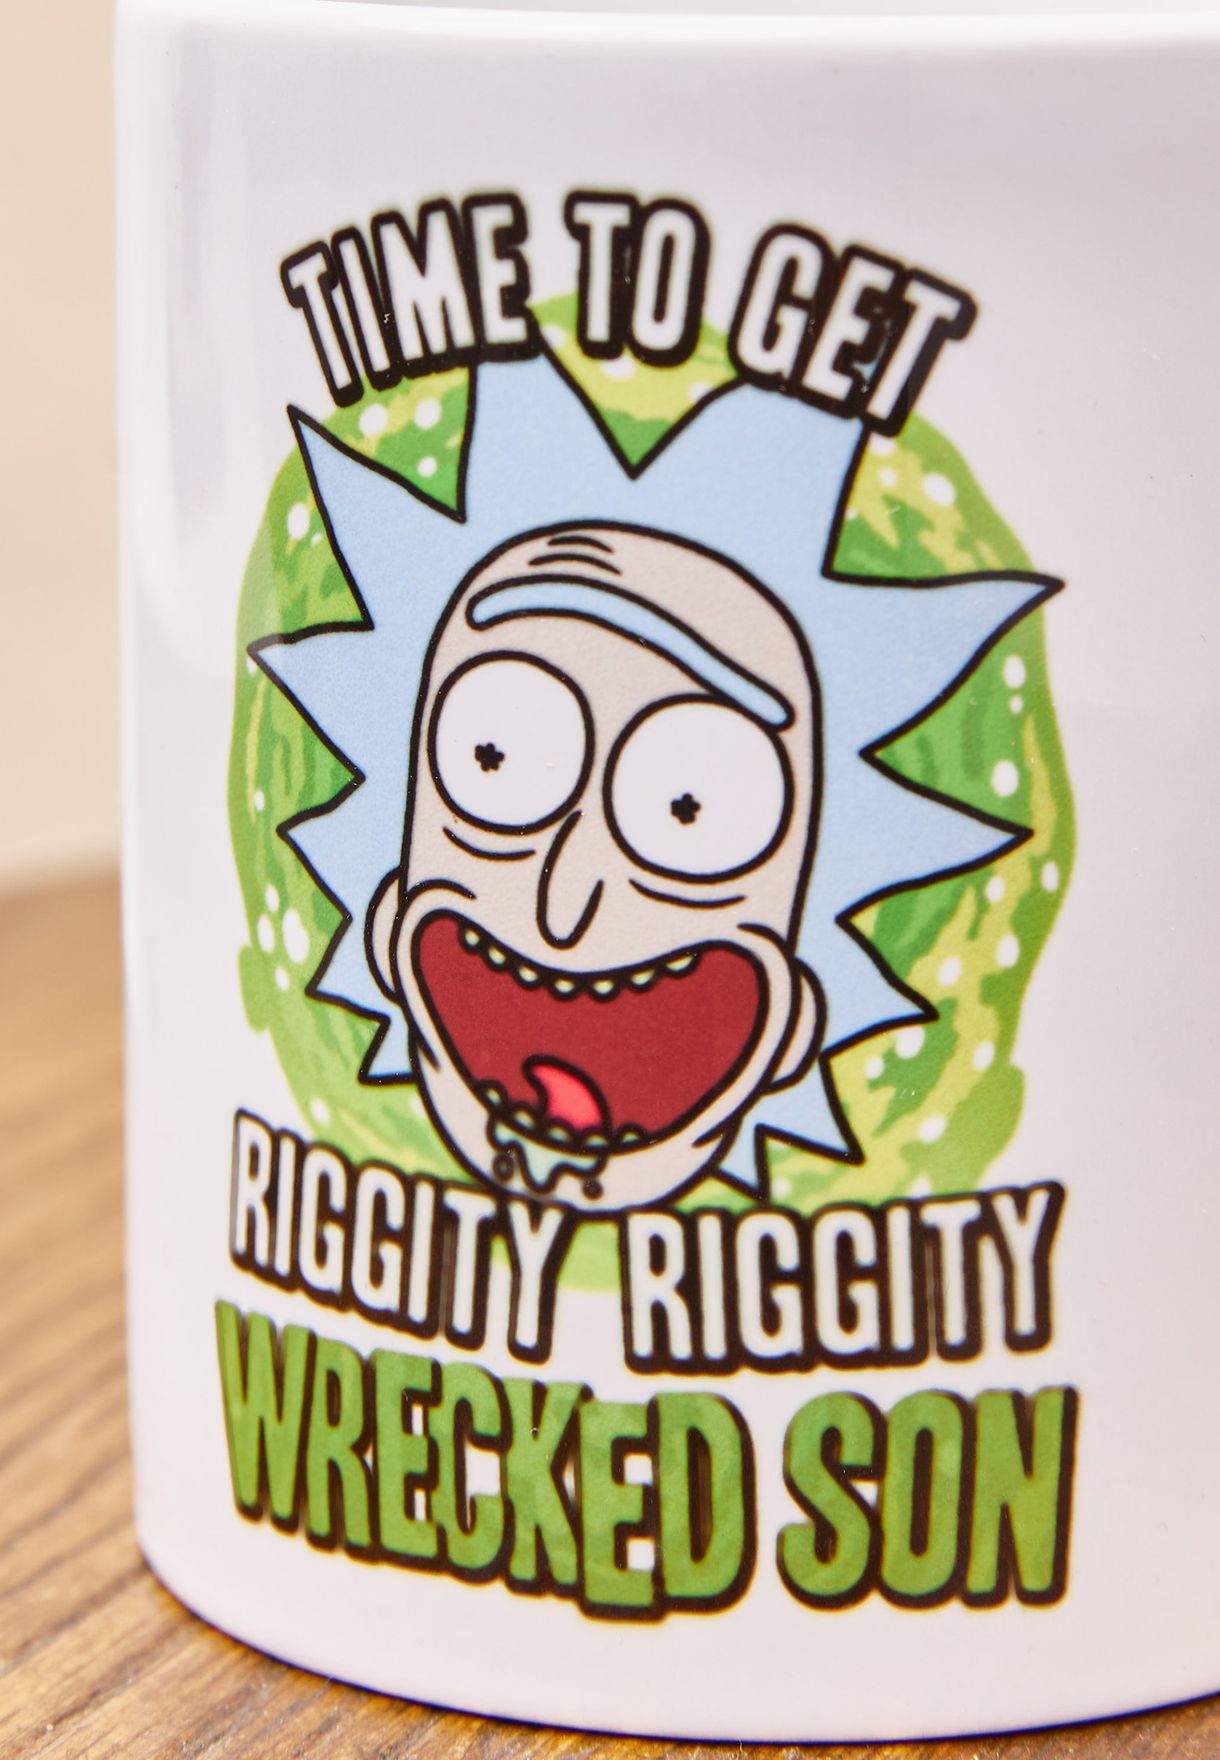 Rick And Morty Wrecked Son Coffee Mug